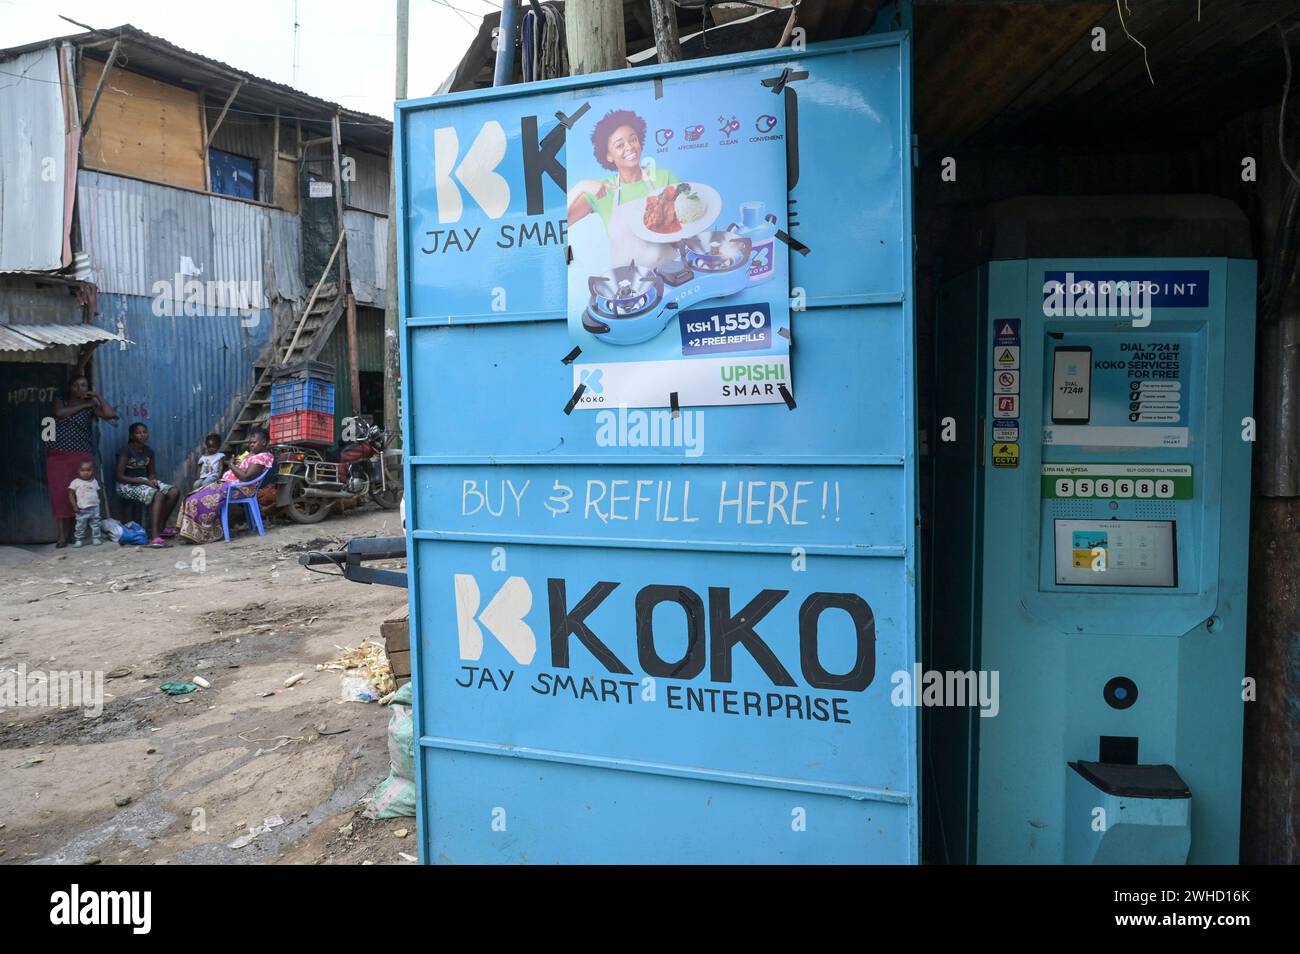 KENYA, Nairobi, bidonville de Mukuru, Koko Fuel fournit des poêles et du carburant de cuisson bioéthanol propre à faible coût via un réseau de distributeurs automatiques de carburant KOKOpoint avec paiement mobile en espèces via mpesa de Safaricom, le réseau de KOKO a été lancé à Nairobi en juin 2019 en partenariat avec vivo Energy Kenya, le titulaire de licence Shell en Afrique, Koko fuel génère des unités carbone vérifiées de manière indépendante / KENIA, Nairobi, saubere Kochenergie, KOKO fuel vertreibt Kocher und Bio-Ethanol über ein Netzwerk von sogenannten Koko points, die Auffüllung erfolgt über mobiles bezahlen mit Mpesa von Safari Banque D'Images